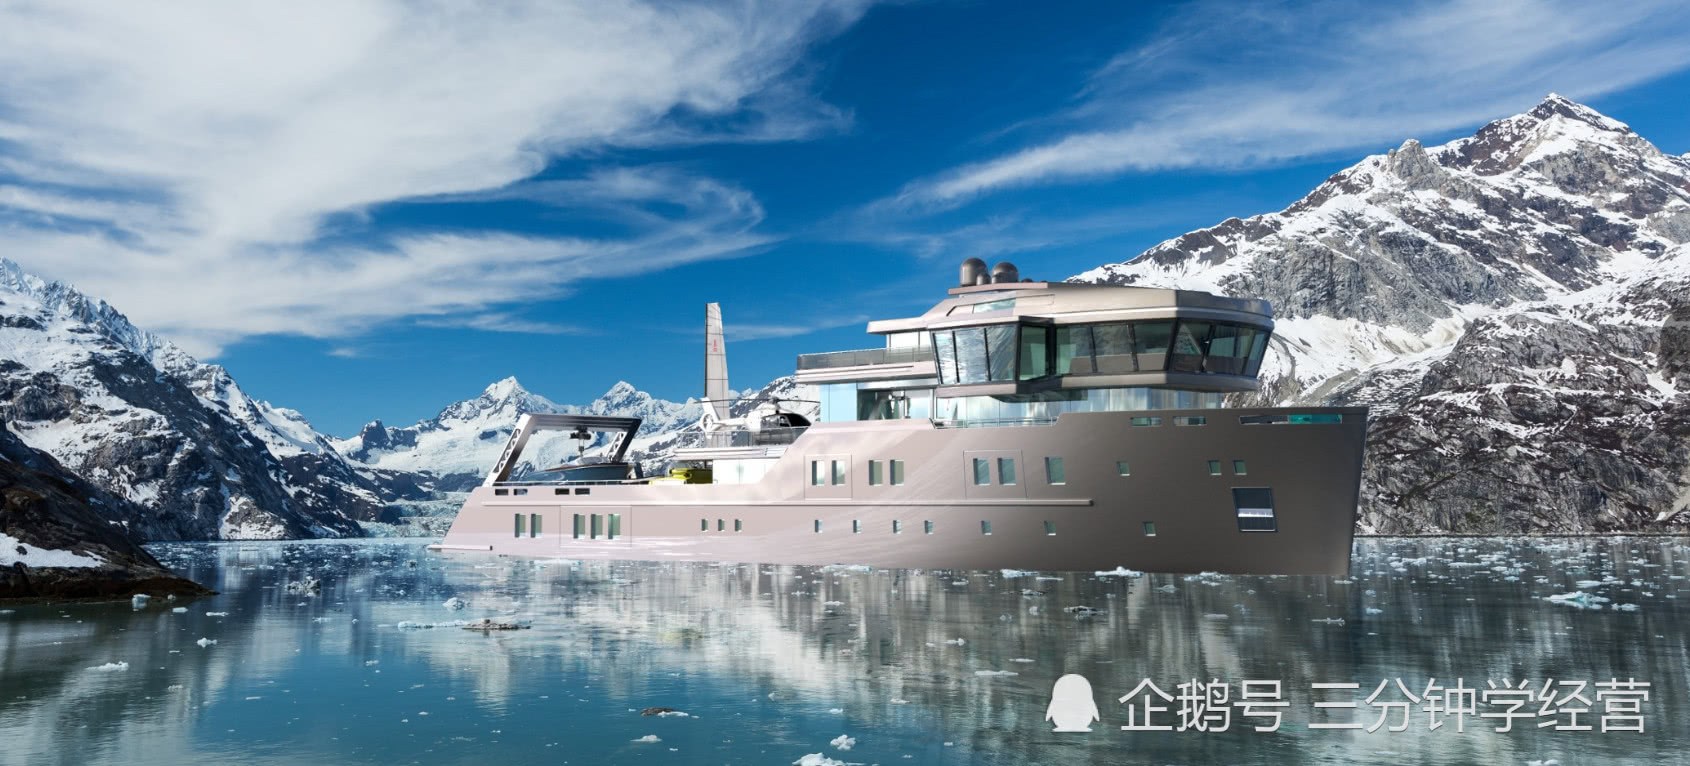 这艘游艇能在地球上最冷的水域运行 可让拥有者去北极和南极探险